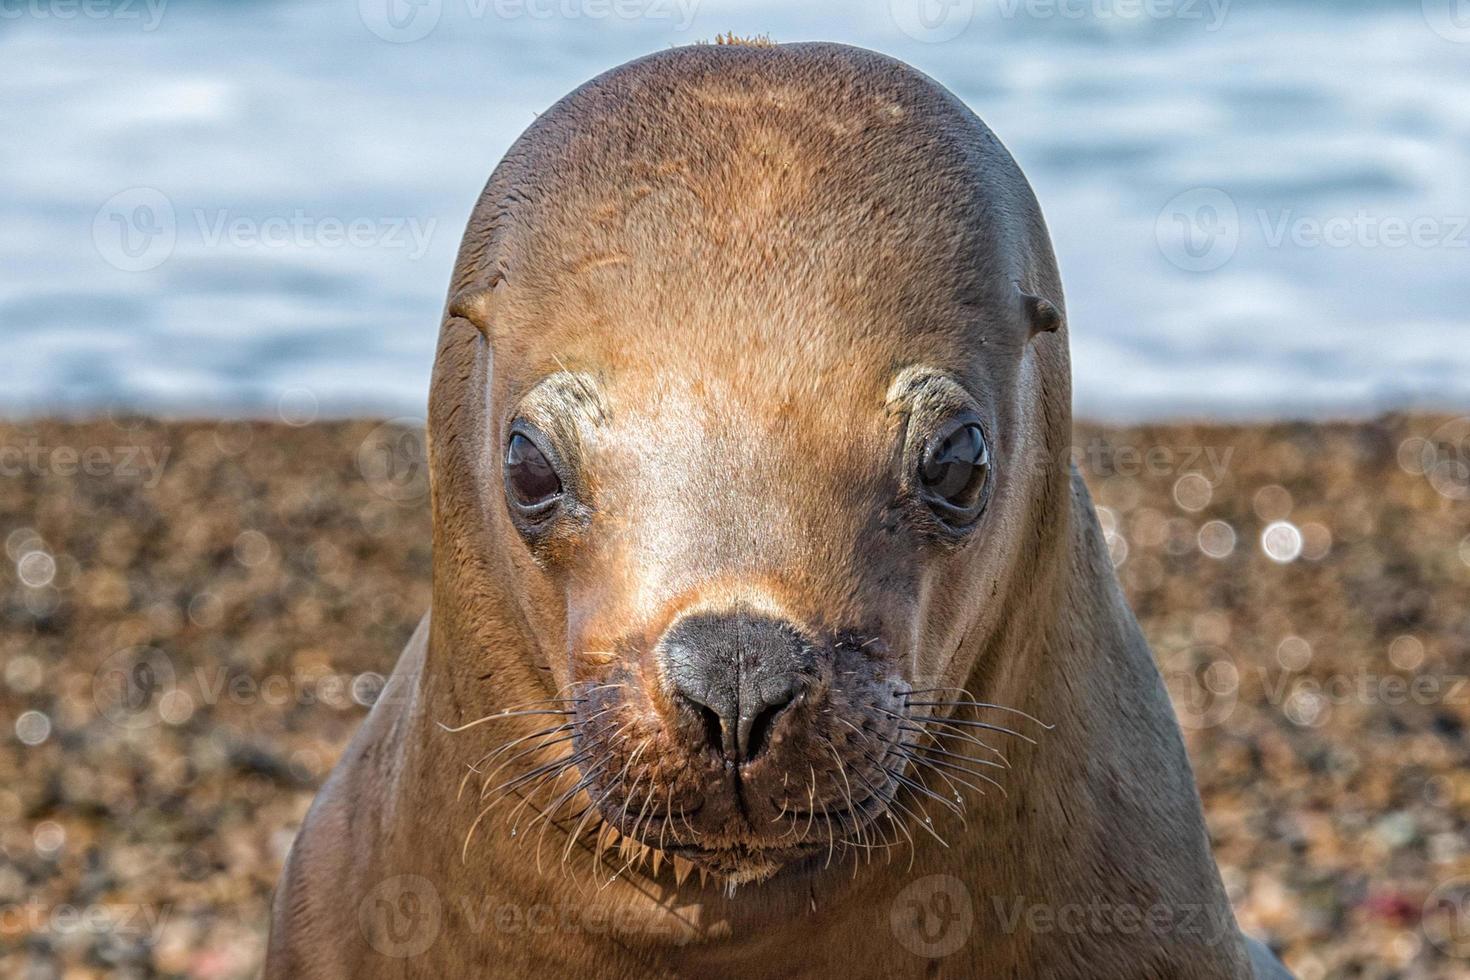 foca leão marinho close-up retrato olhe para você foto